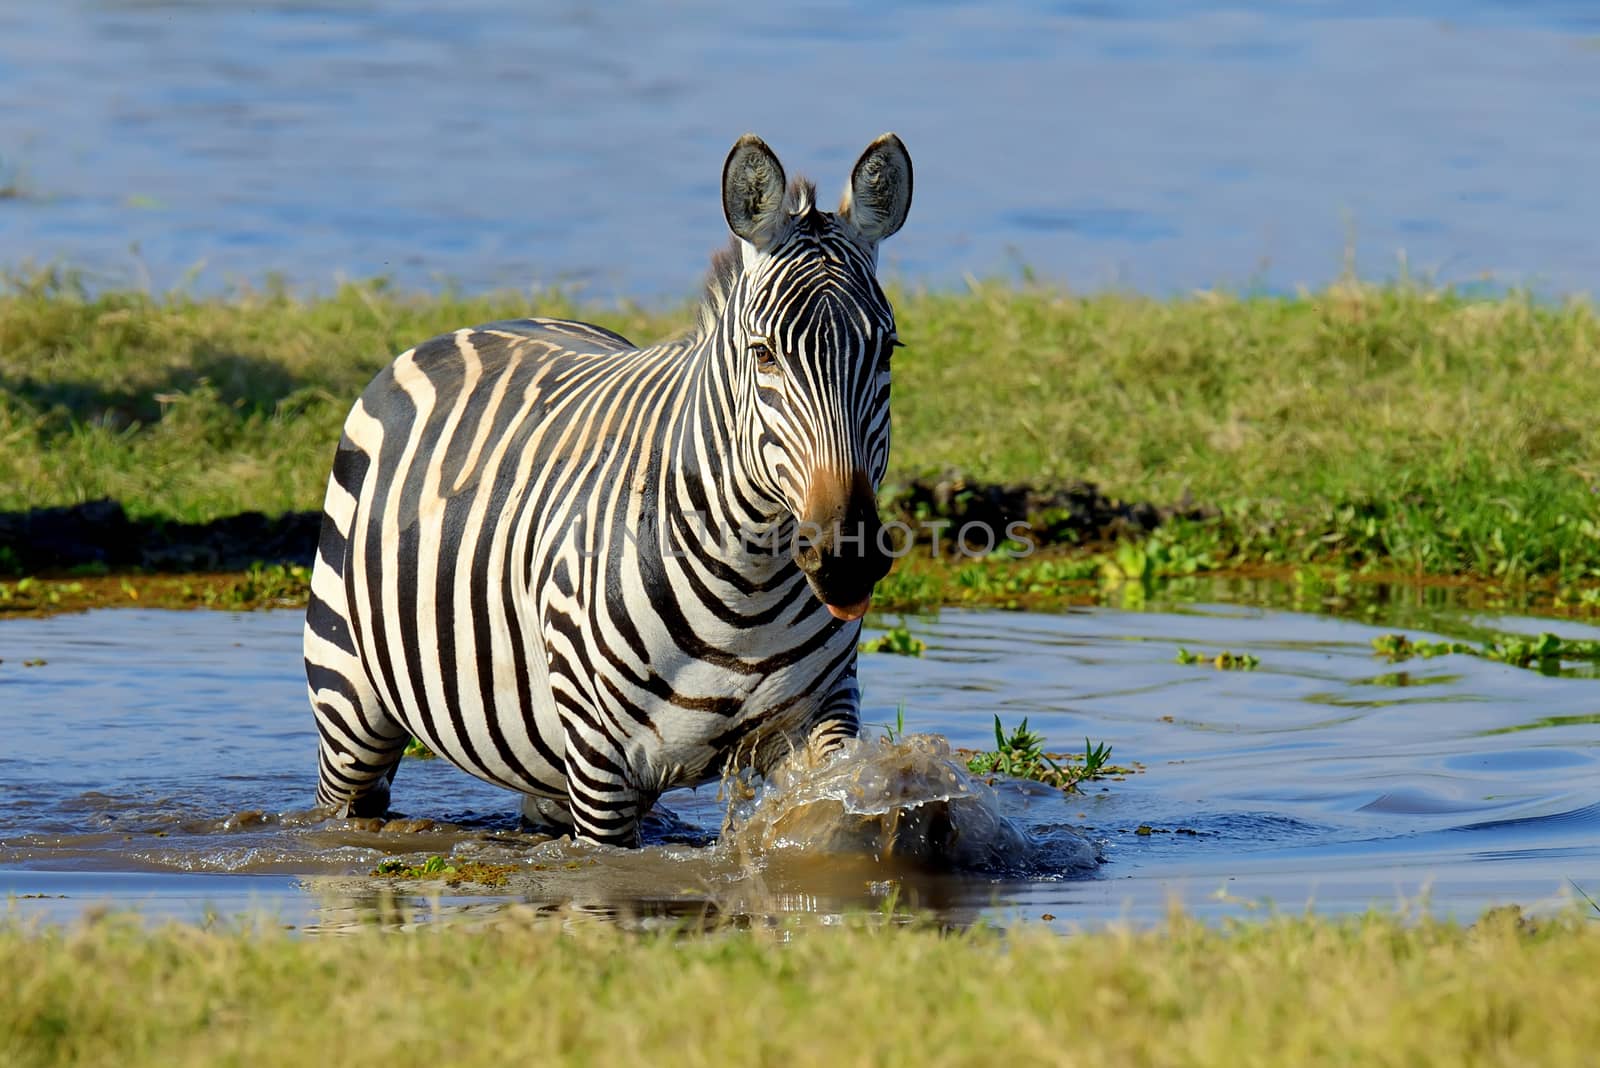 Zebra on lake in Africa, National park of Kenya